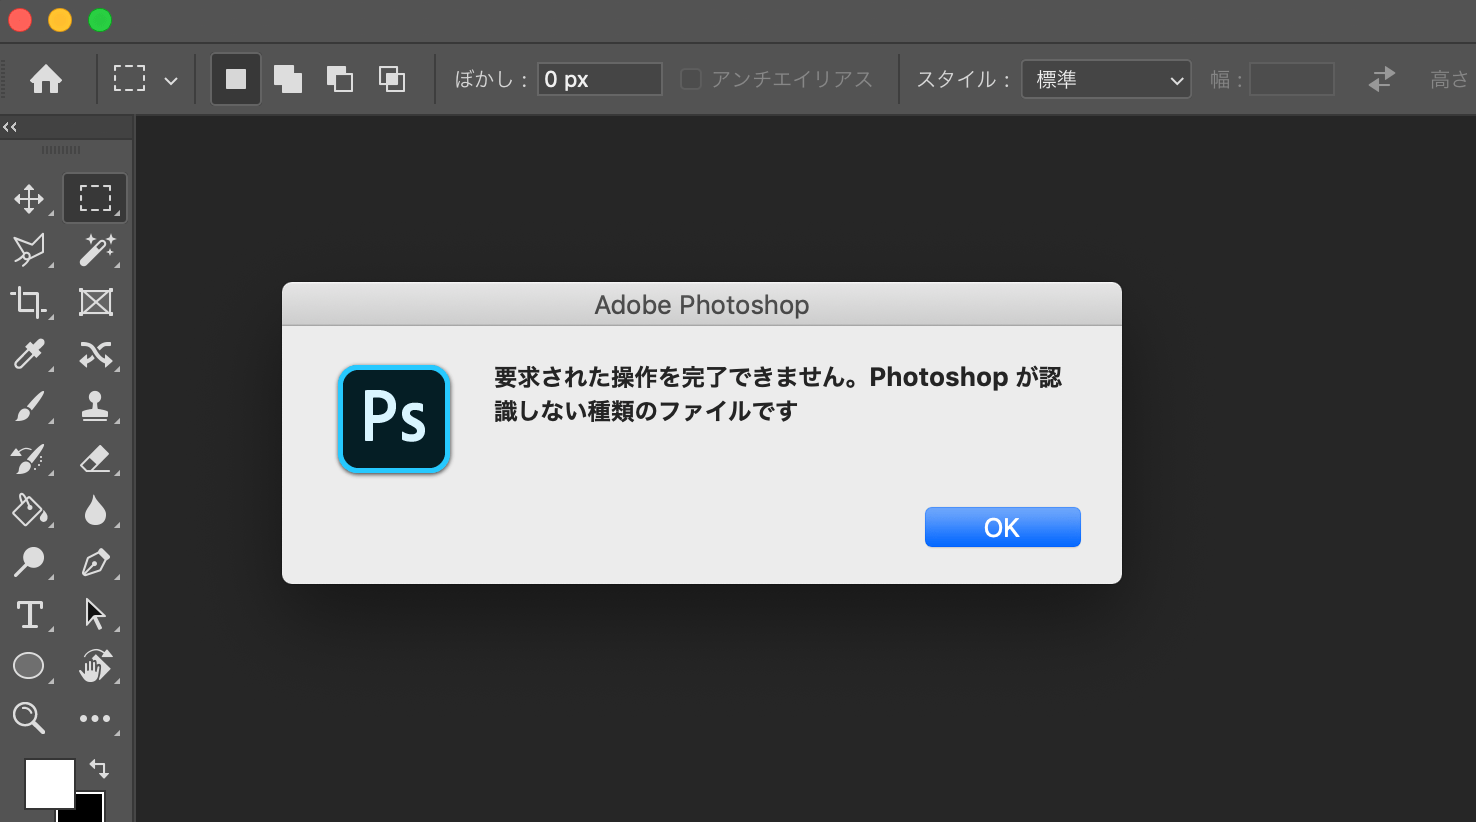 ラクラク対応 Photoshopでwebp形式の画像を開く方法 ネタプラス